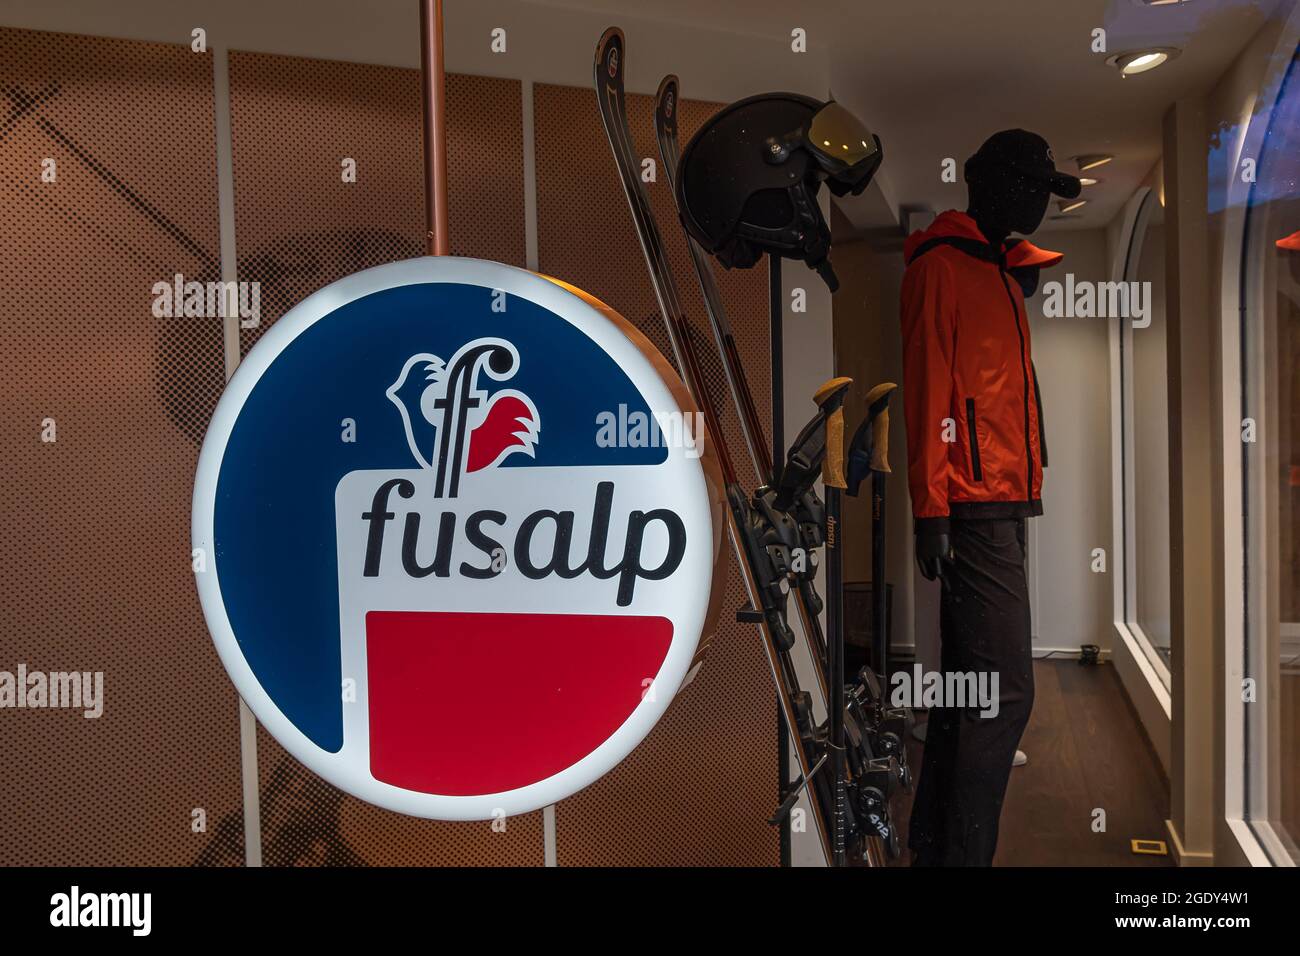 Gstaad, Suiza - 16 de julio de 2020: Fusalp es una marca de ropa de invierno, originalmente para el esquí. Almacenar en Gstaad Foto de stock